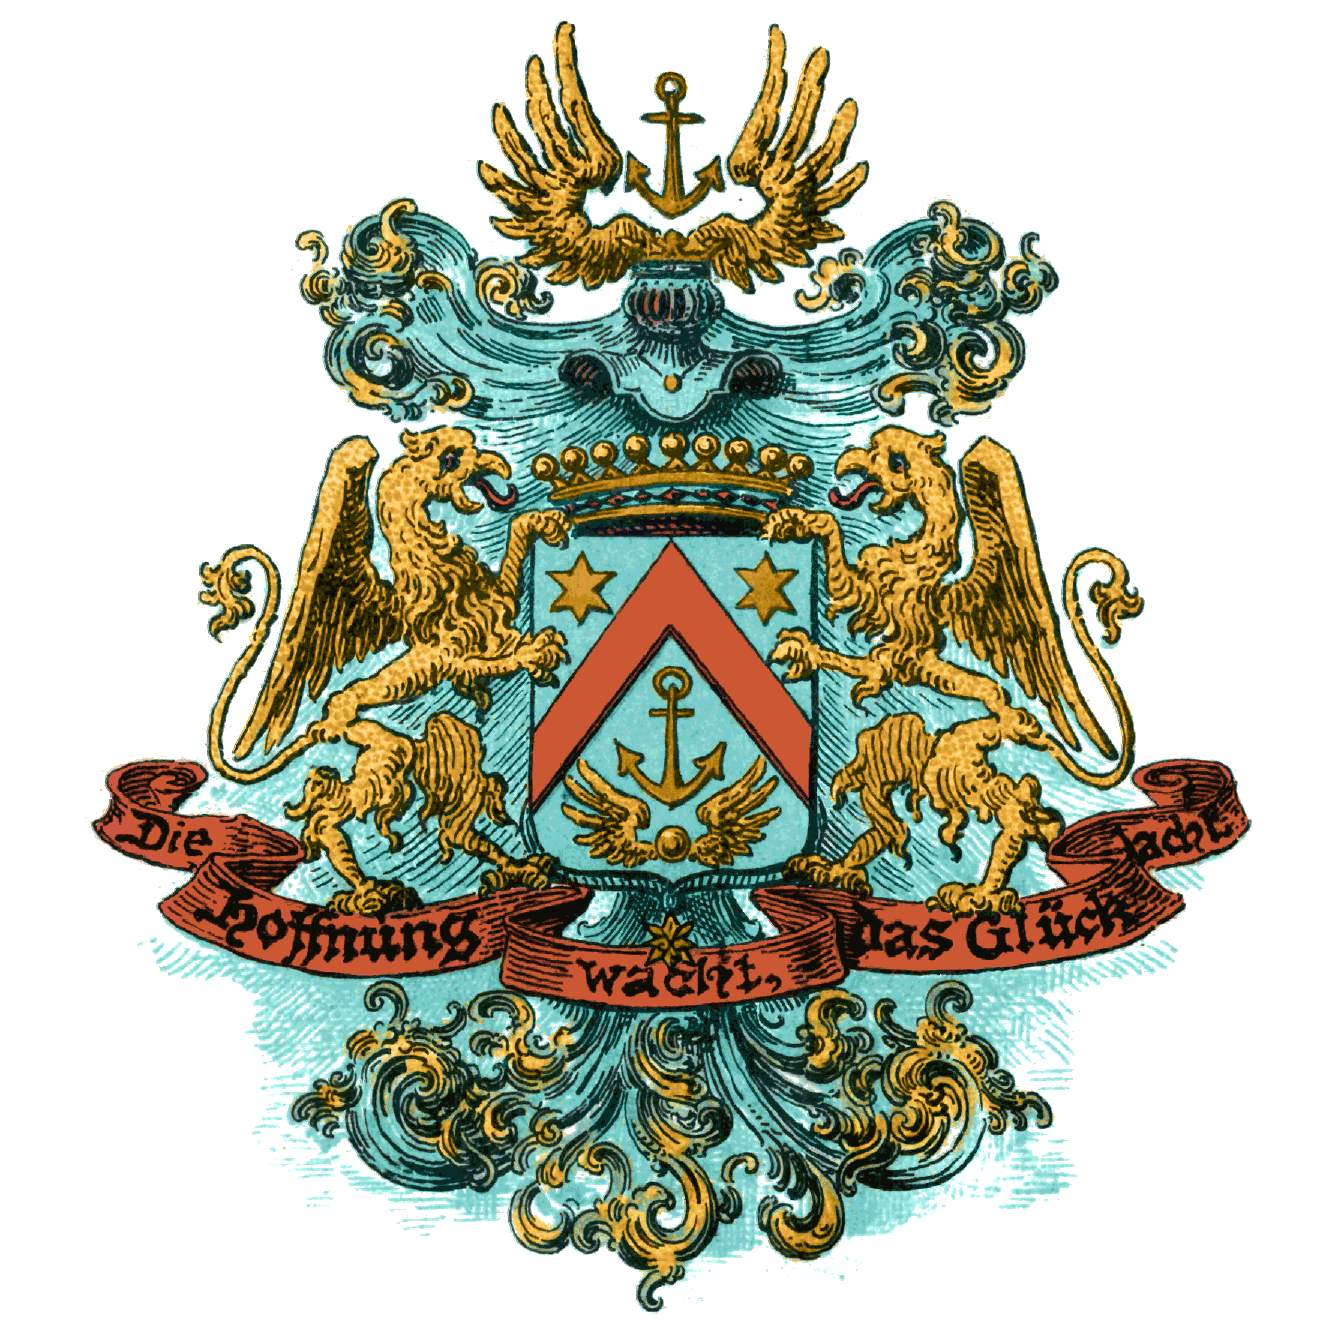 Swiss emblem von Gross family